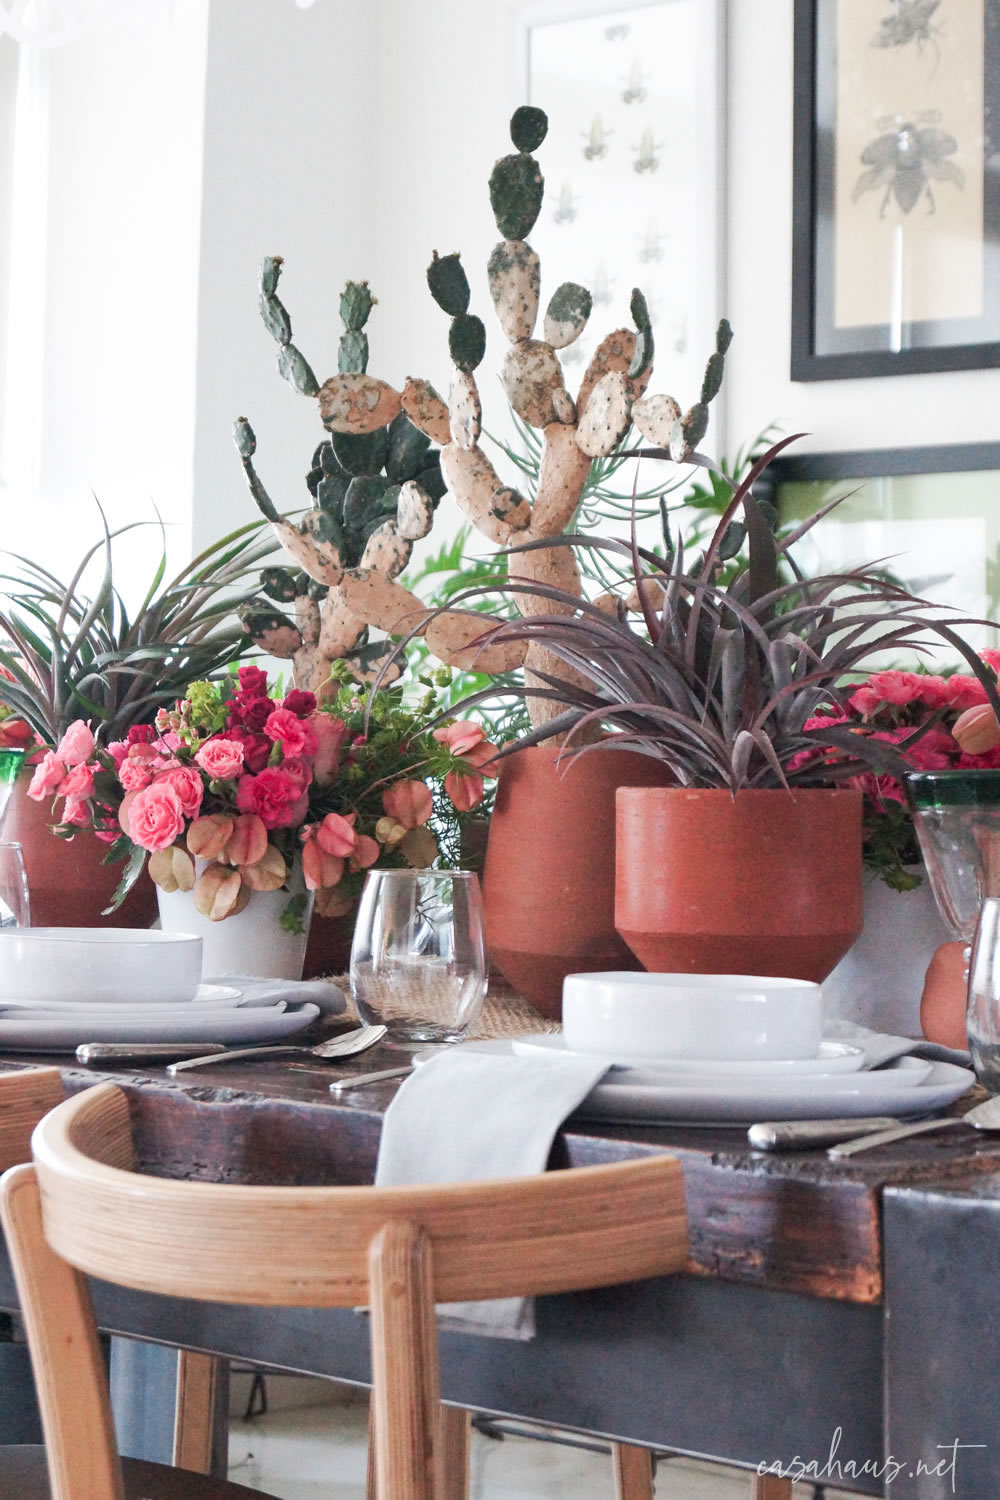 Detalle de mesa con macetas con nopales, bromelias y flores rosas